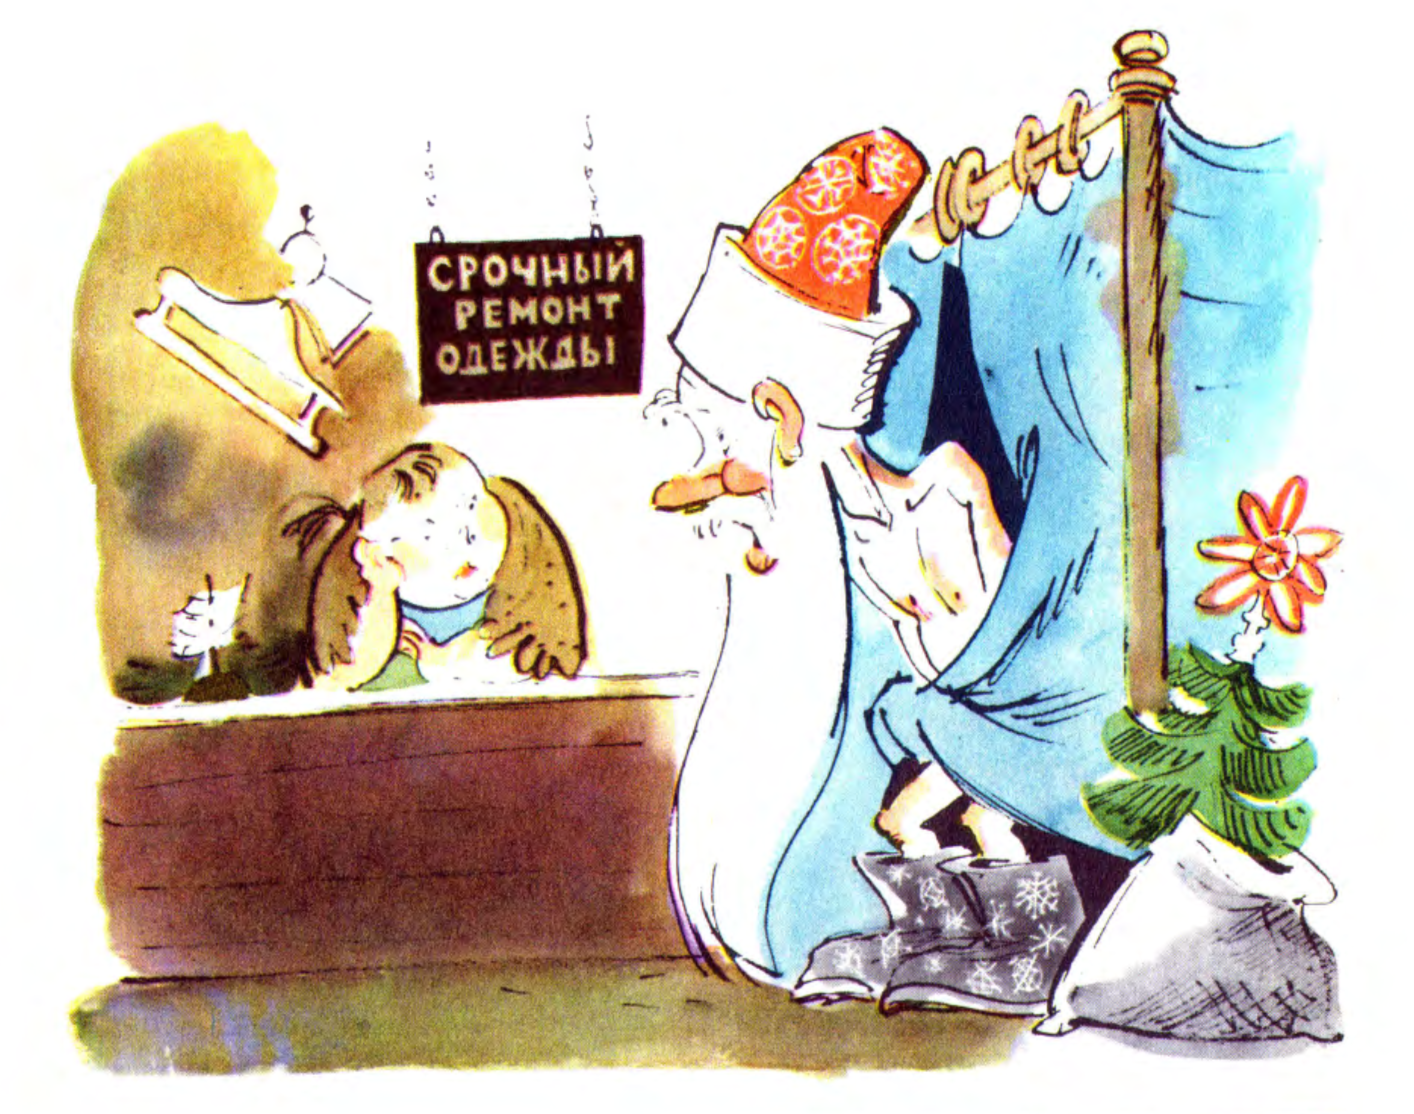 Карикатура "Срочный ремонт одежды", Елисеев и Скобелев